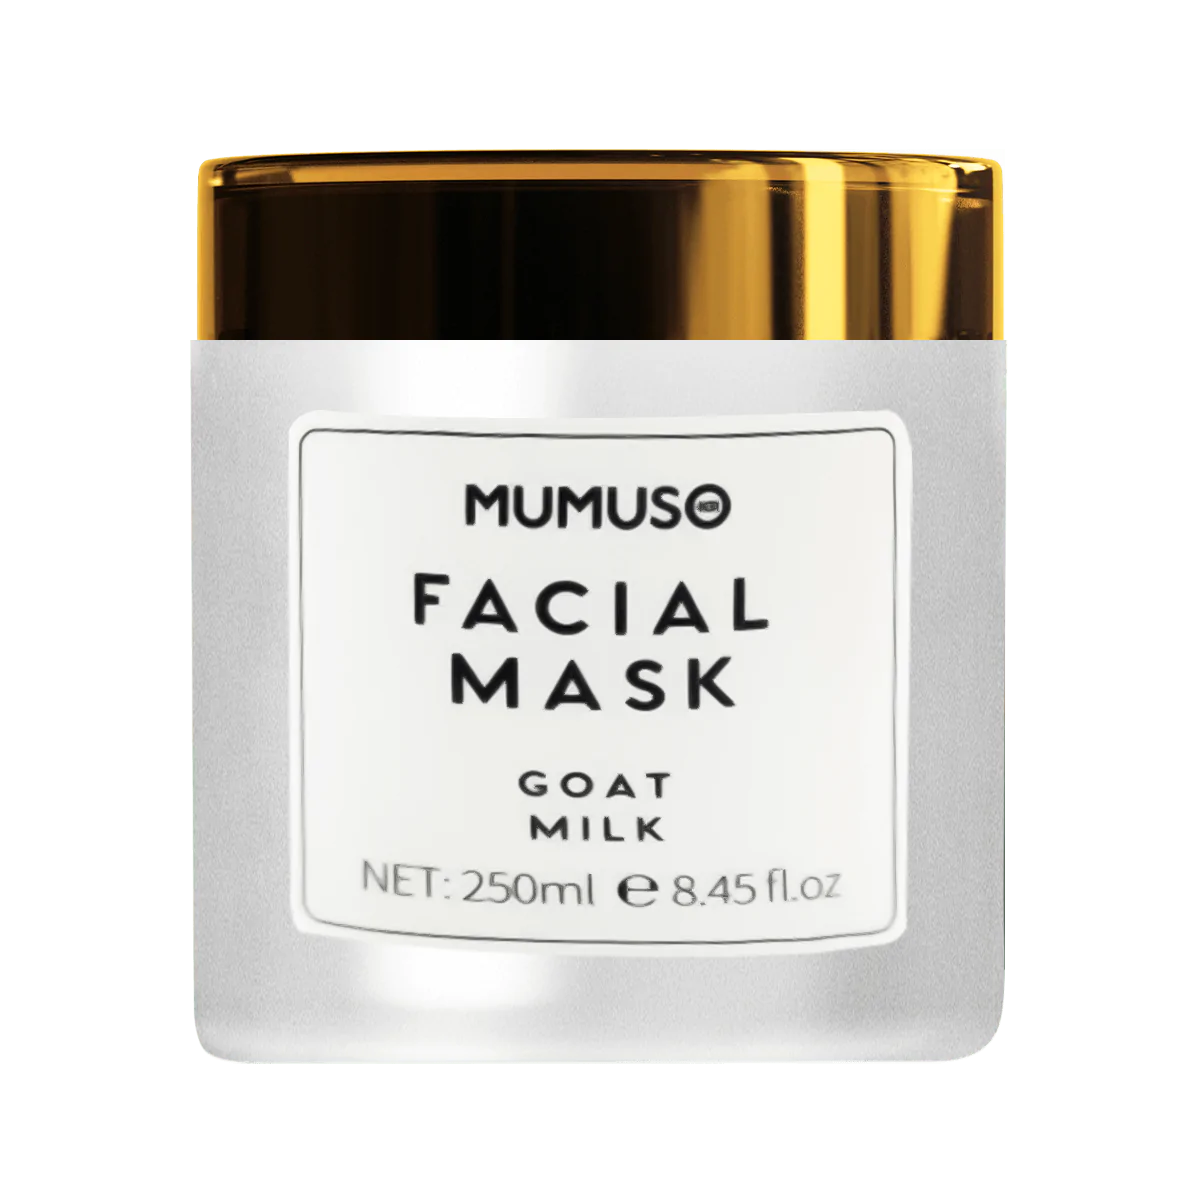 Mumuso Facial Mask Goat Milk Reviews